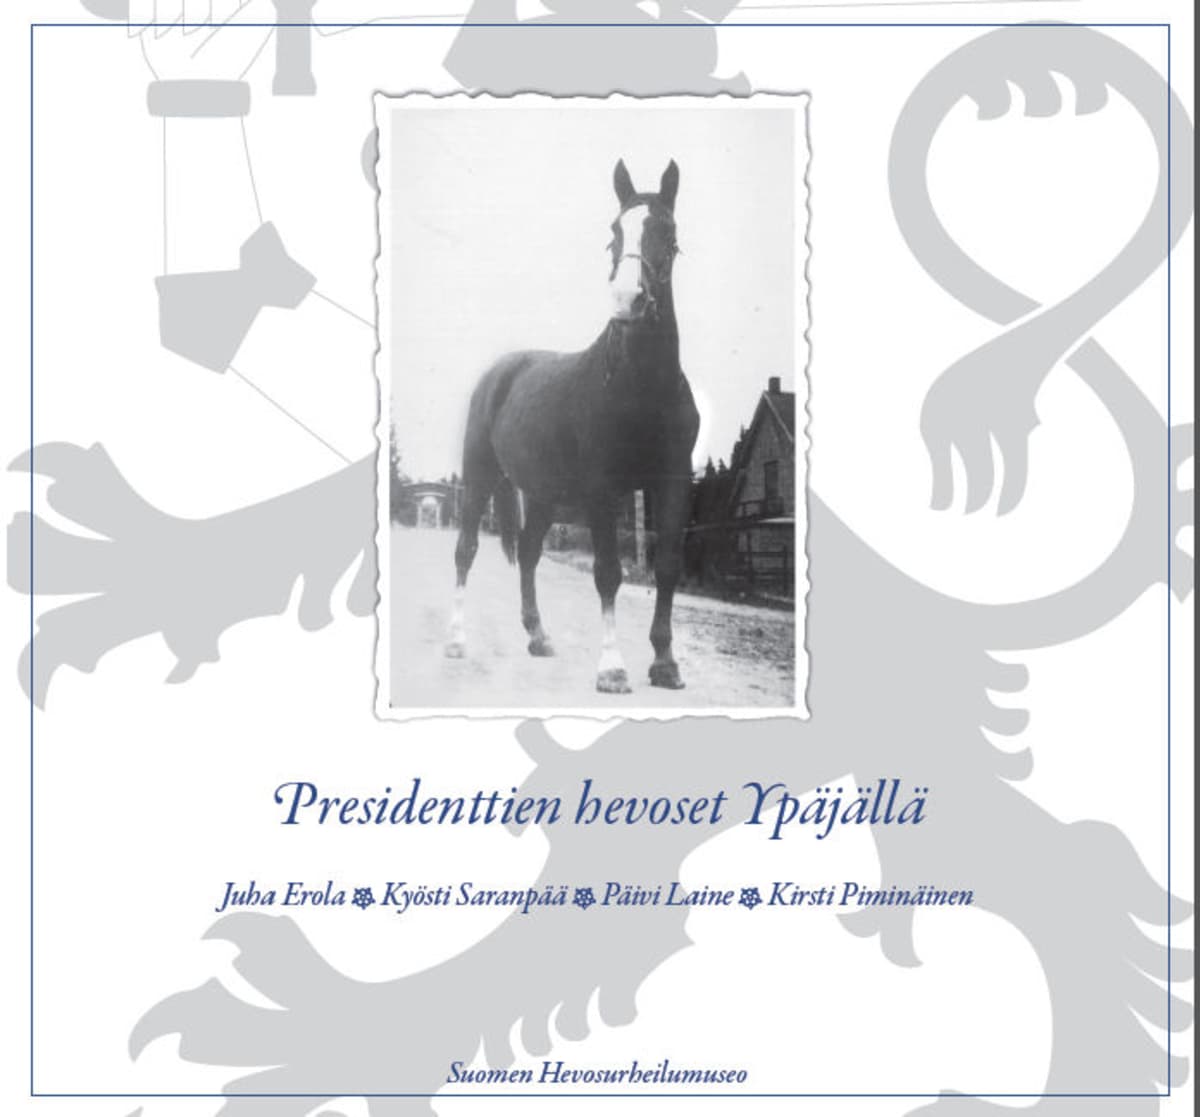 Ypäjän Presidenttien hevoset kirjan kansikuvassa marsalkka Mannerheimin Käthy